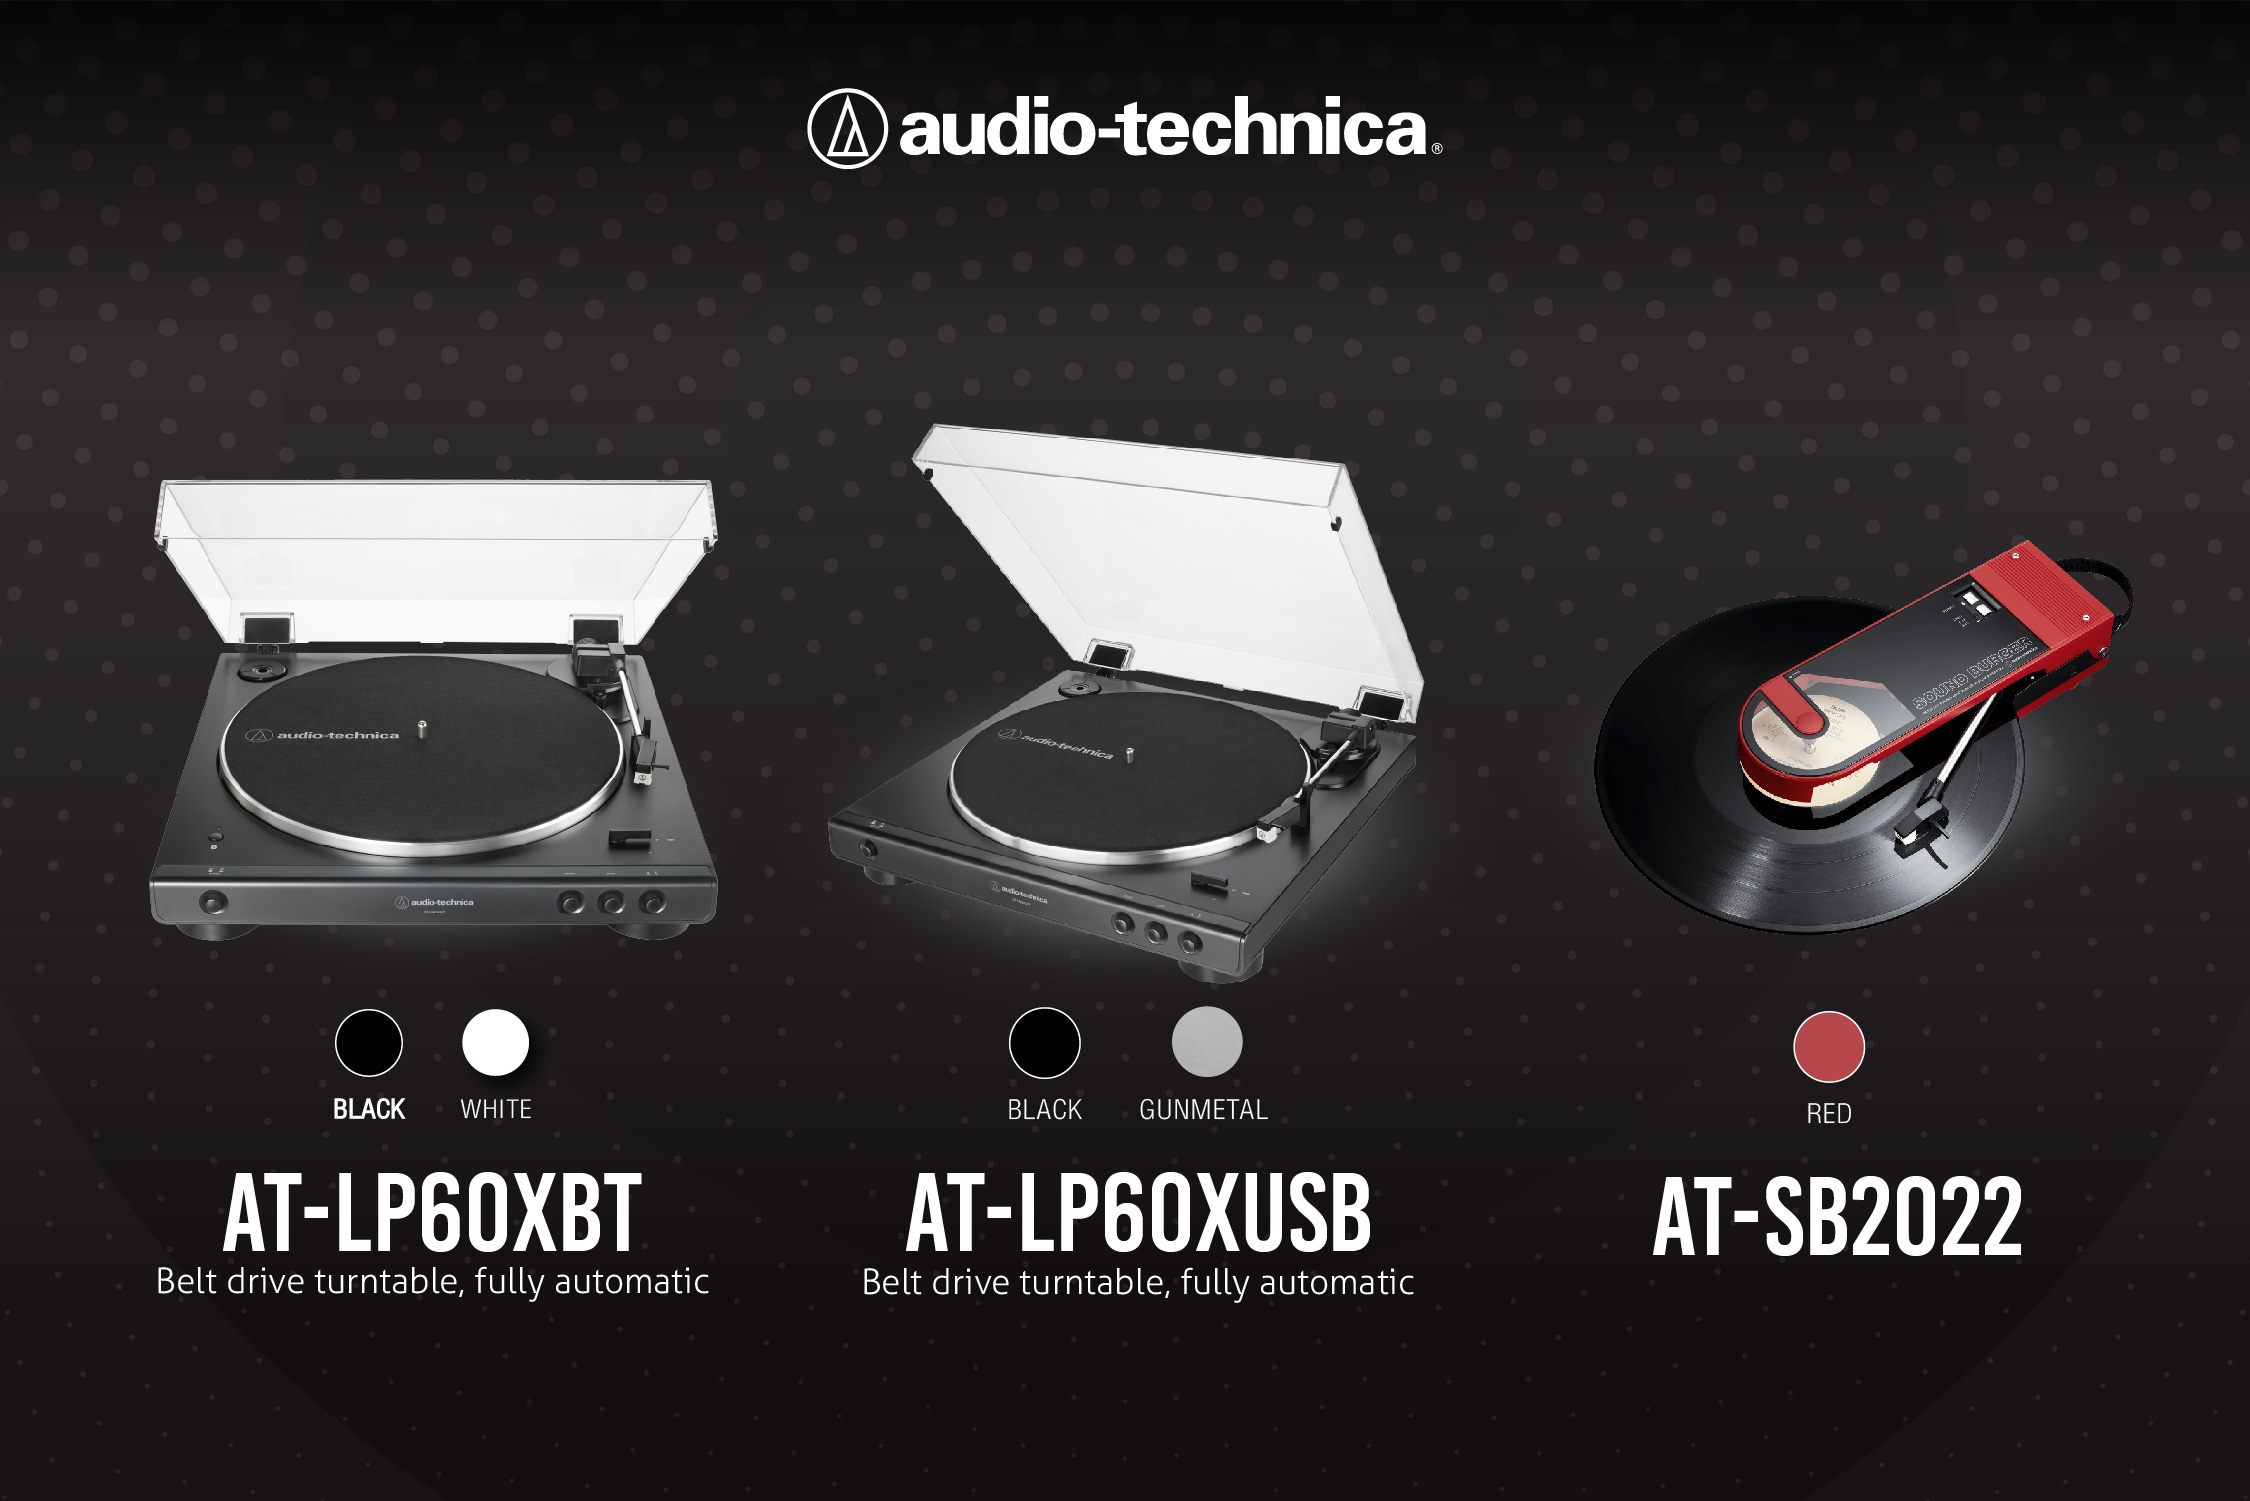 อาร์ทีบีฯ เปิดตัวเครื่องเล่นแผ่นเสียงจากแบรนด์ Audio-Technica 3 รุ่นใหม่